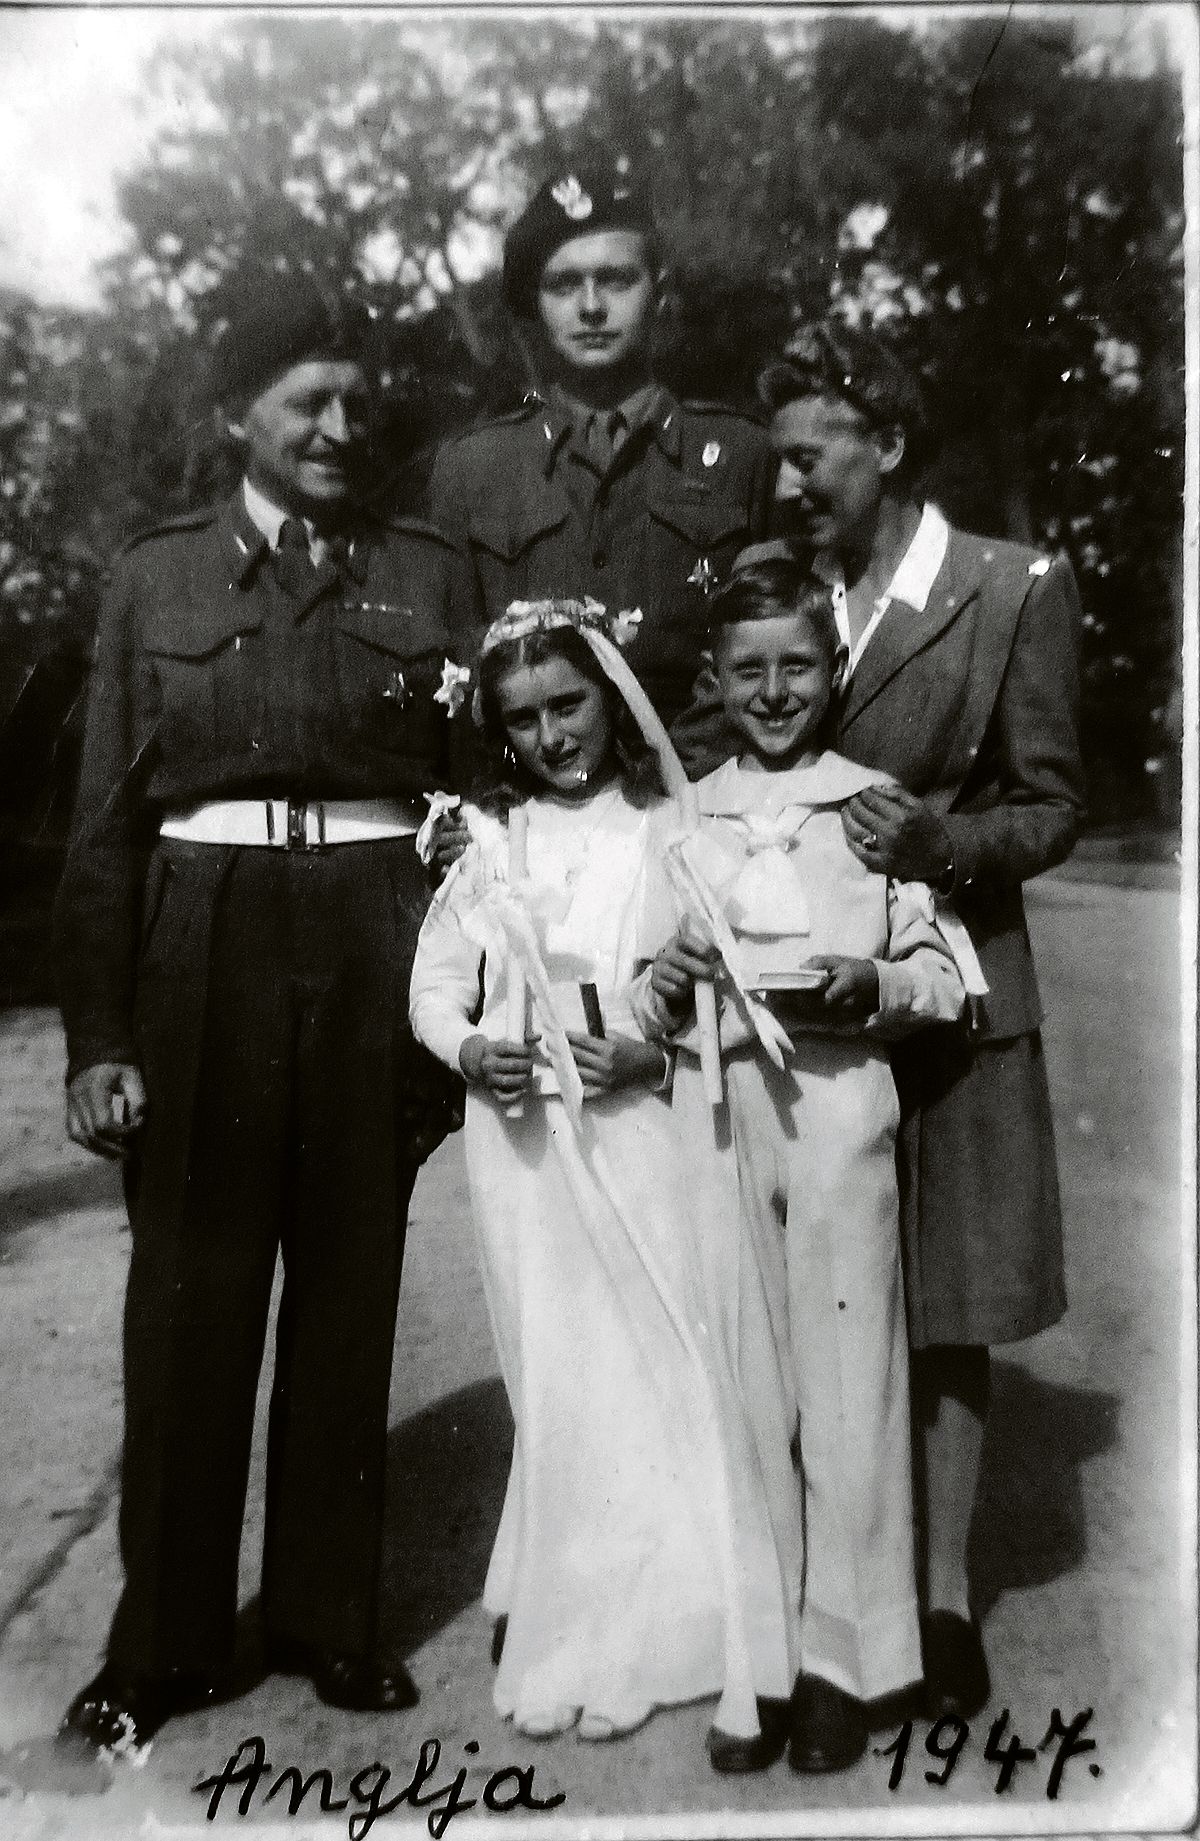 Mannerheimin ystäväperhe Jadwiga ja Aleksander Zamoyski edessään lapset Andrzej ja Mika. Mukana kuvassa myös Aleksanderin aseveljiä sodan jälkeen Italiassa 1946.